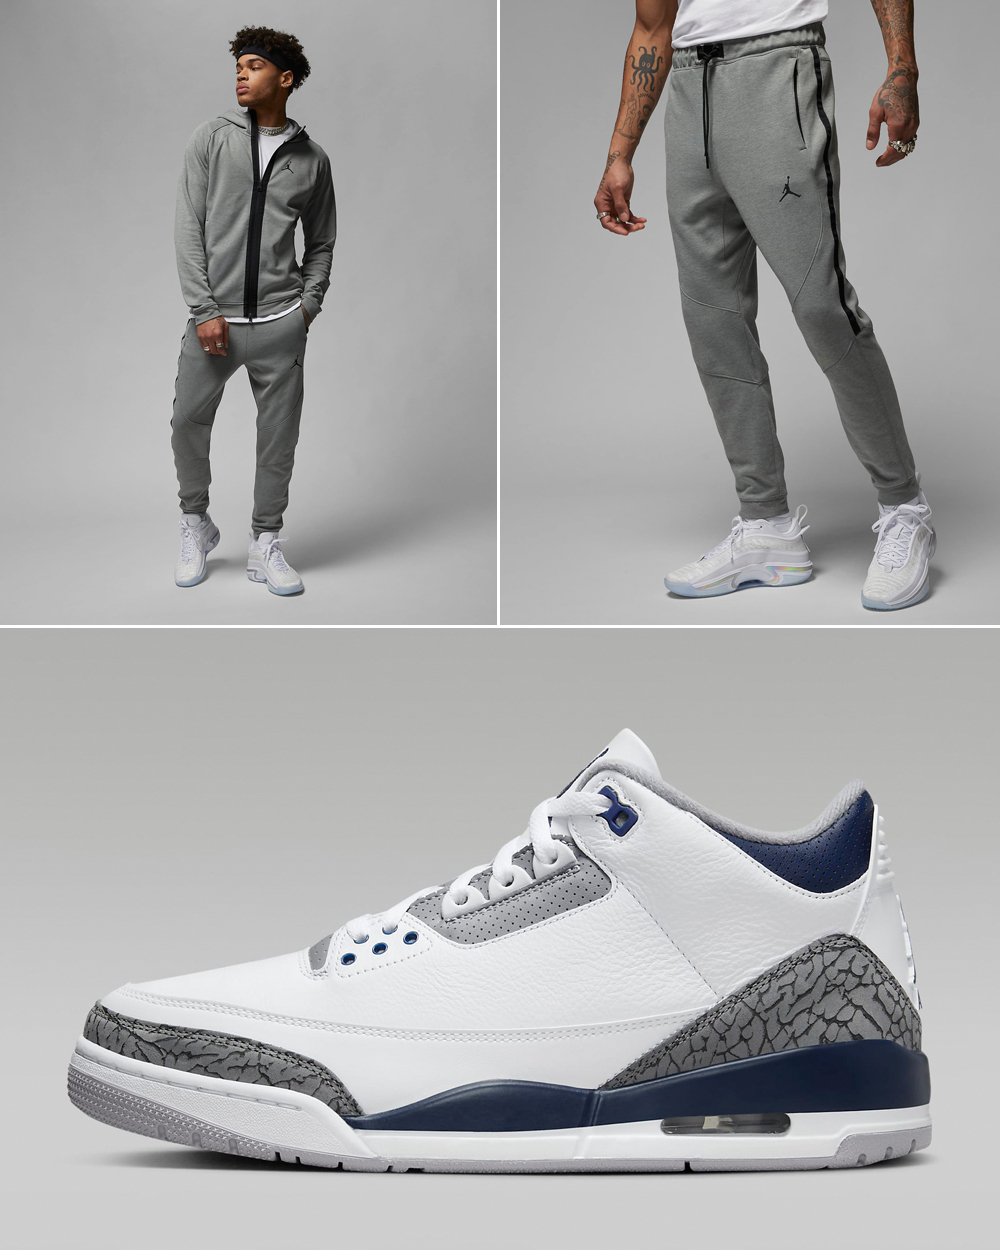 Air-Jordan-3-Midnight-Navy-Cement-Grey-Hoodie-Pants